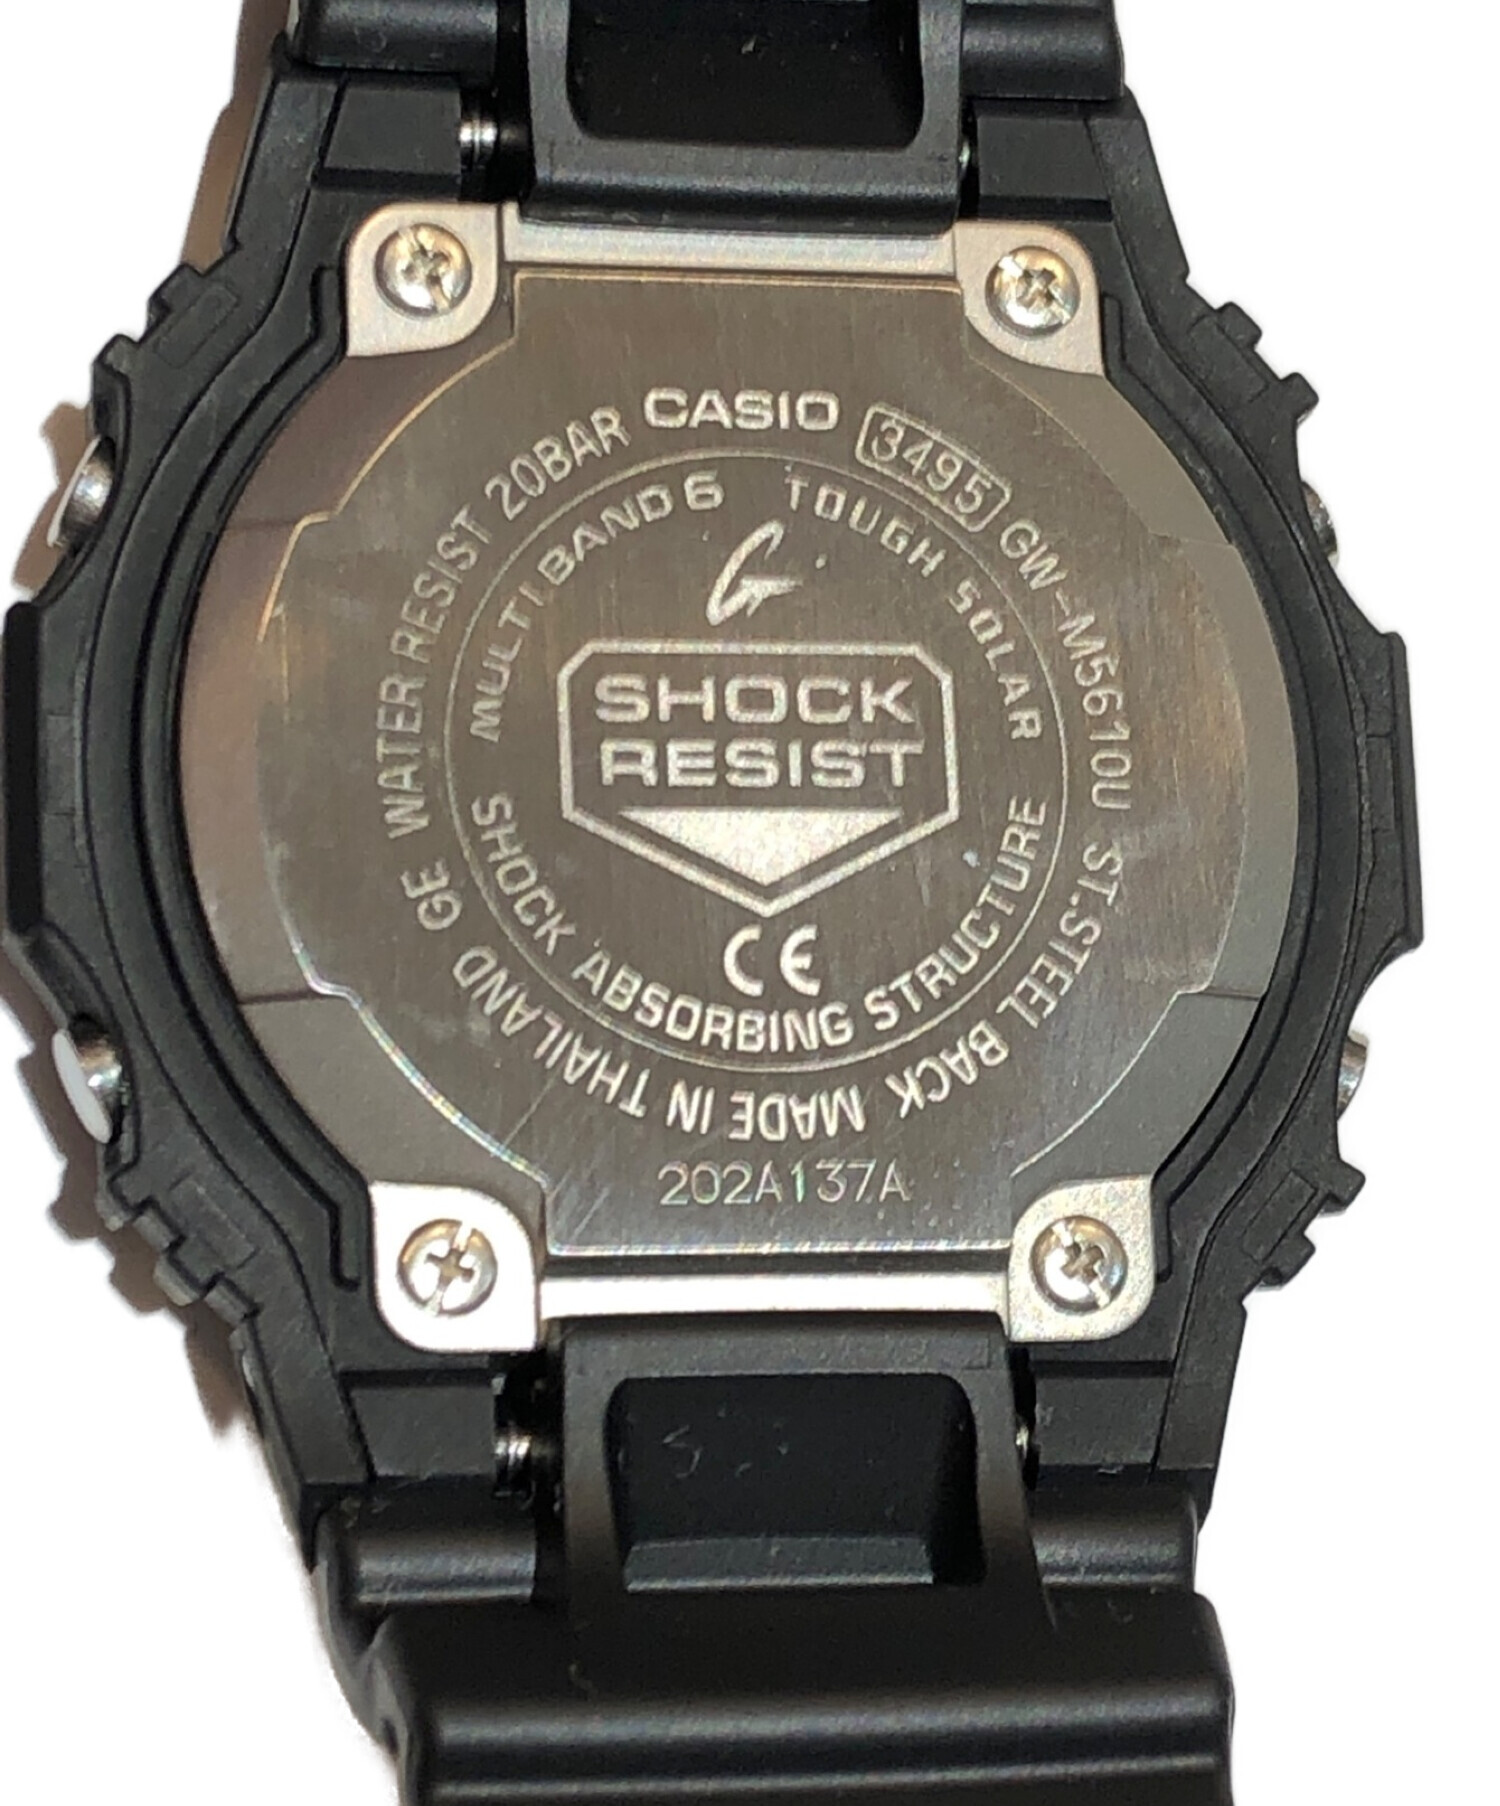 CASIO G-shock (カシオ ジーショック) GW-M5610U-1JF リストウォッチ 腕時計 ブラック